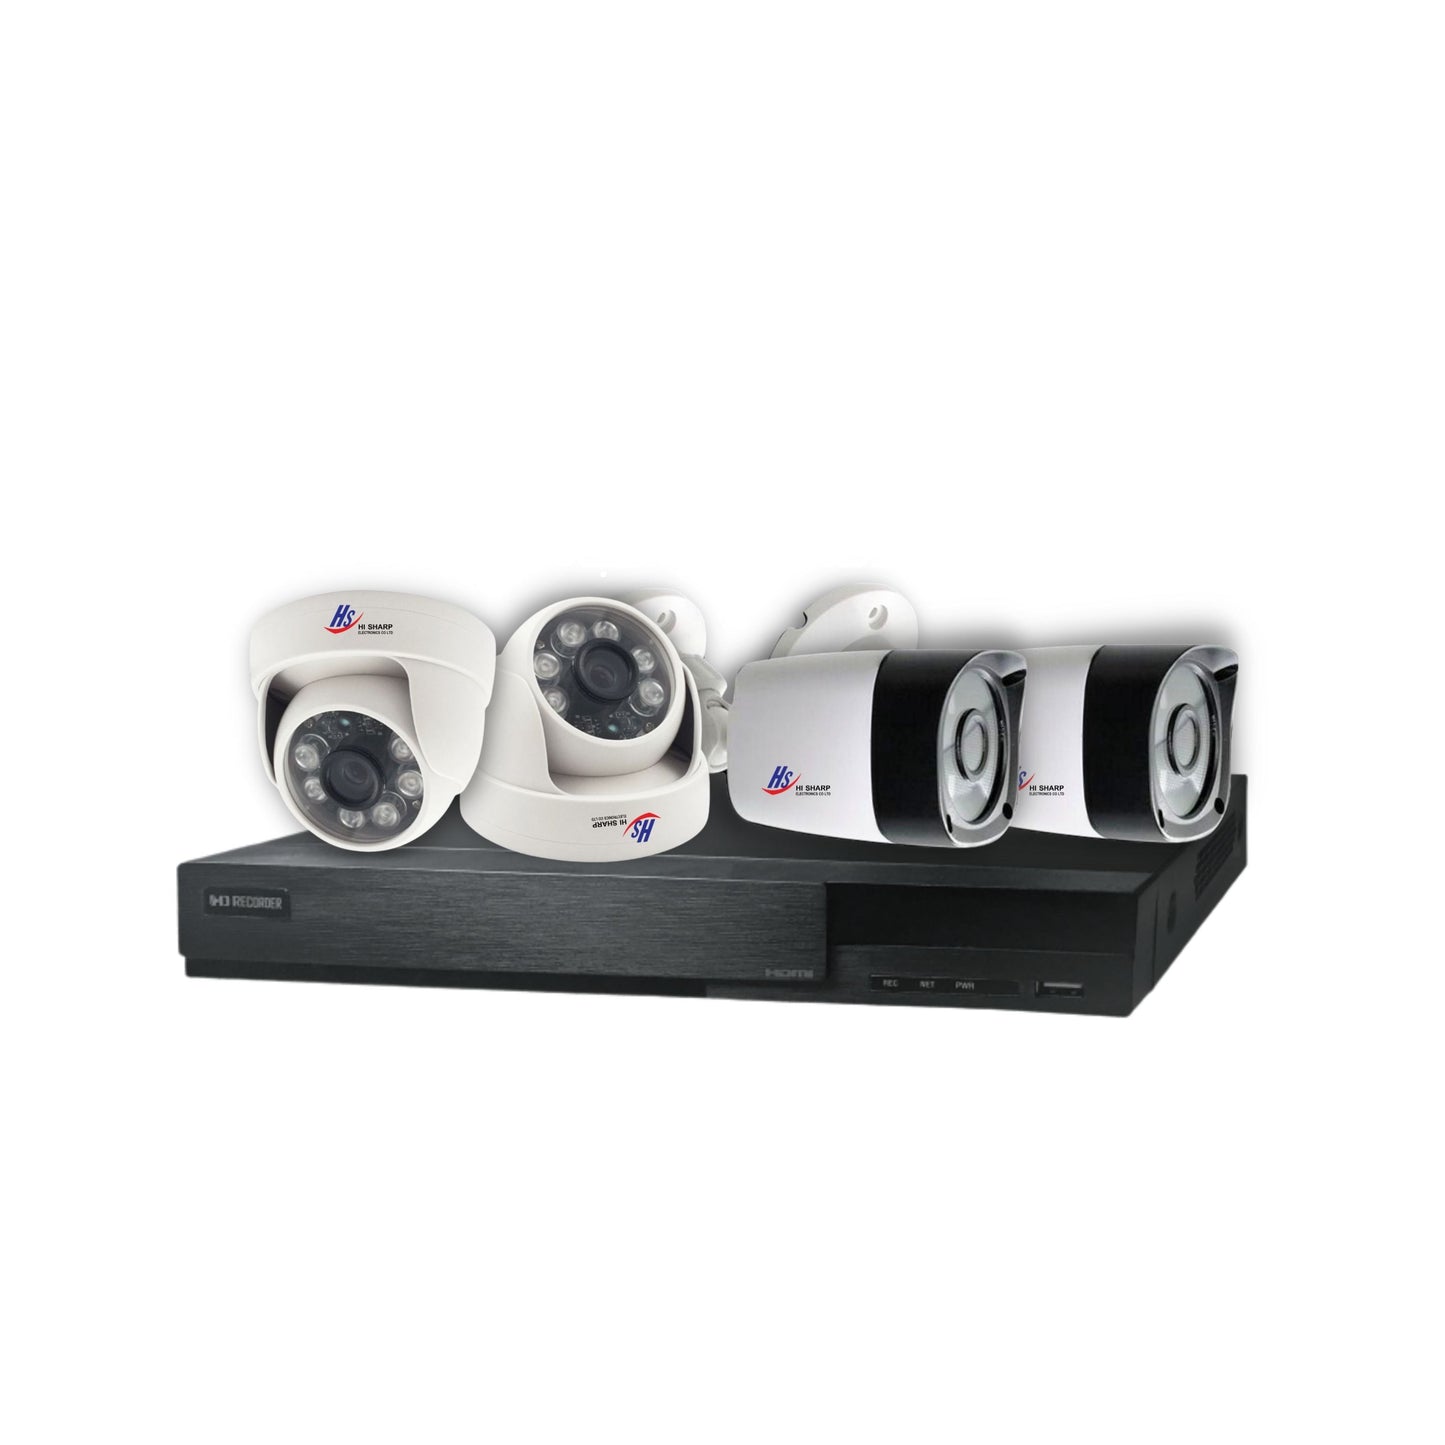 SALE, Surveillance System - 4 Security Cameras HI SHARP, with DVR, 5 megapixels, FULL HD